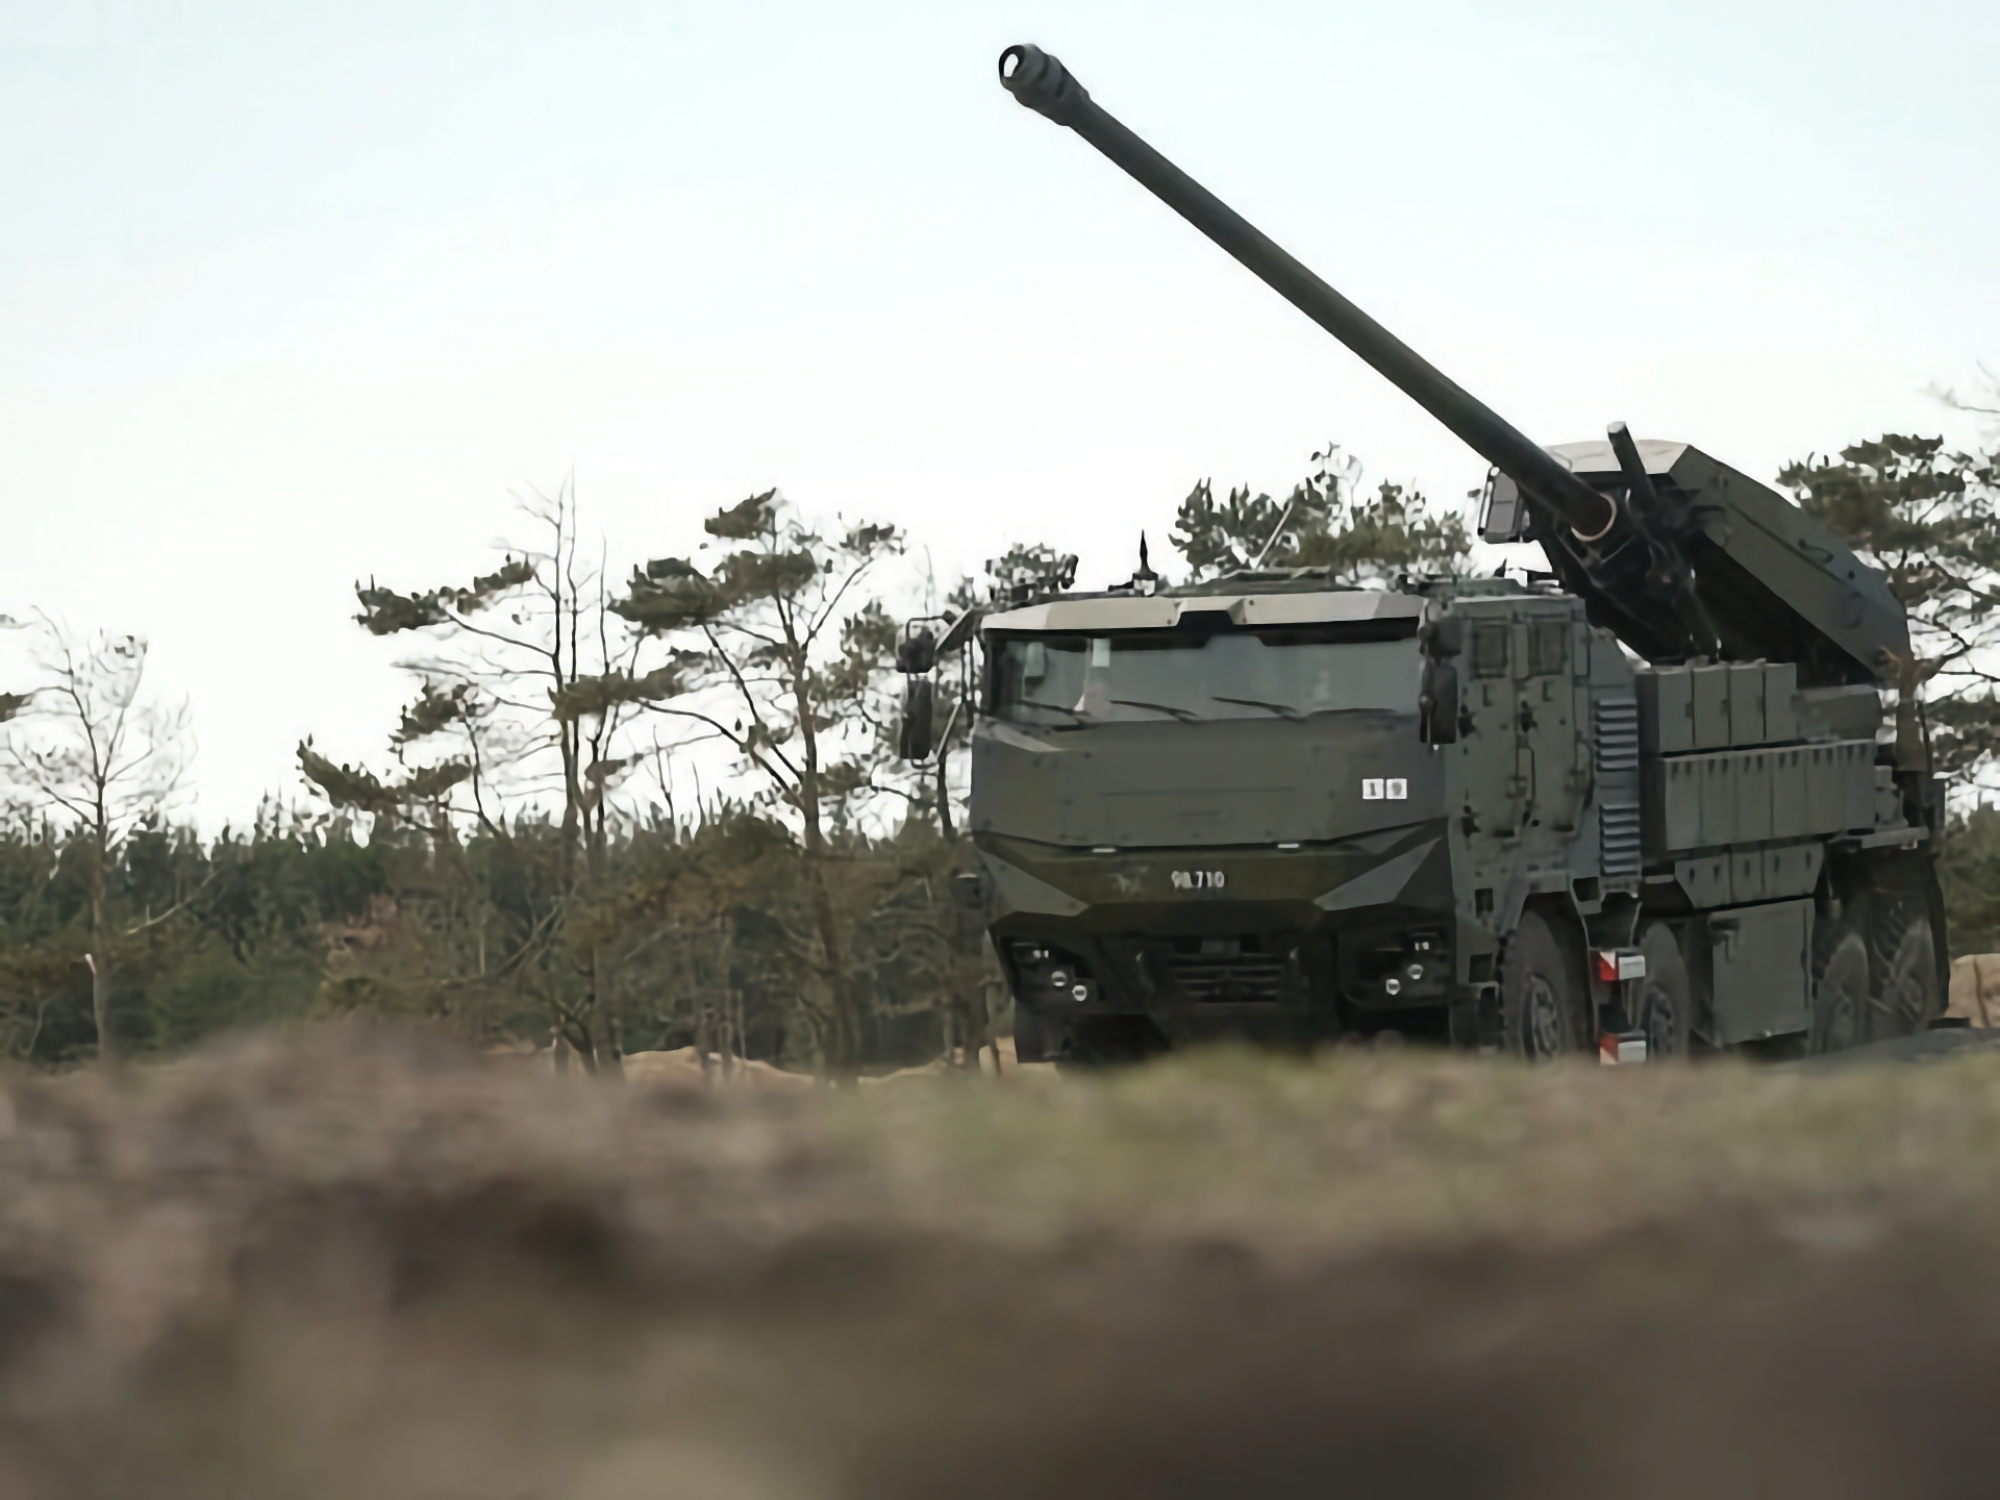 Ukrainas väpnade styrkor använder redan CAESAR självgående artillerienheter baserade på Tatra 8x8-chassier